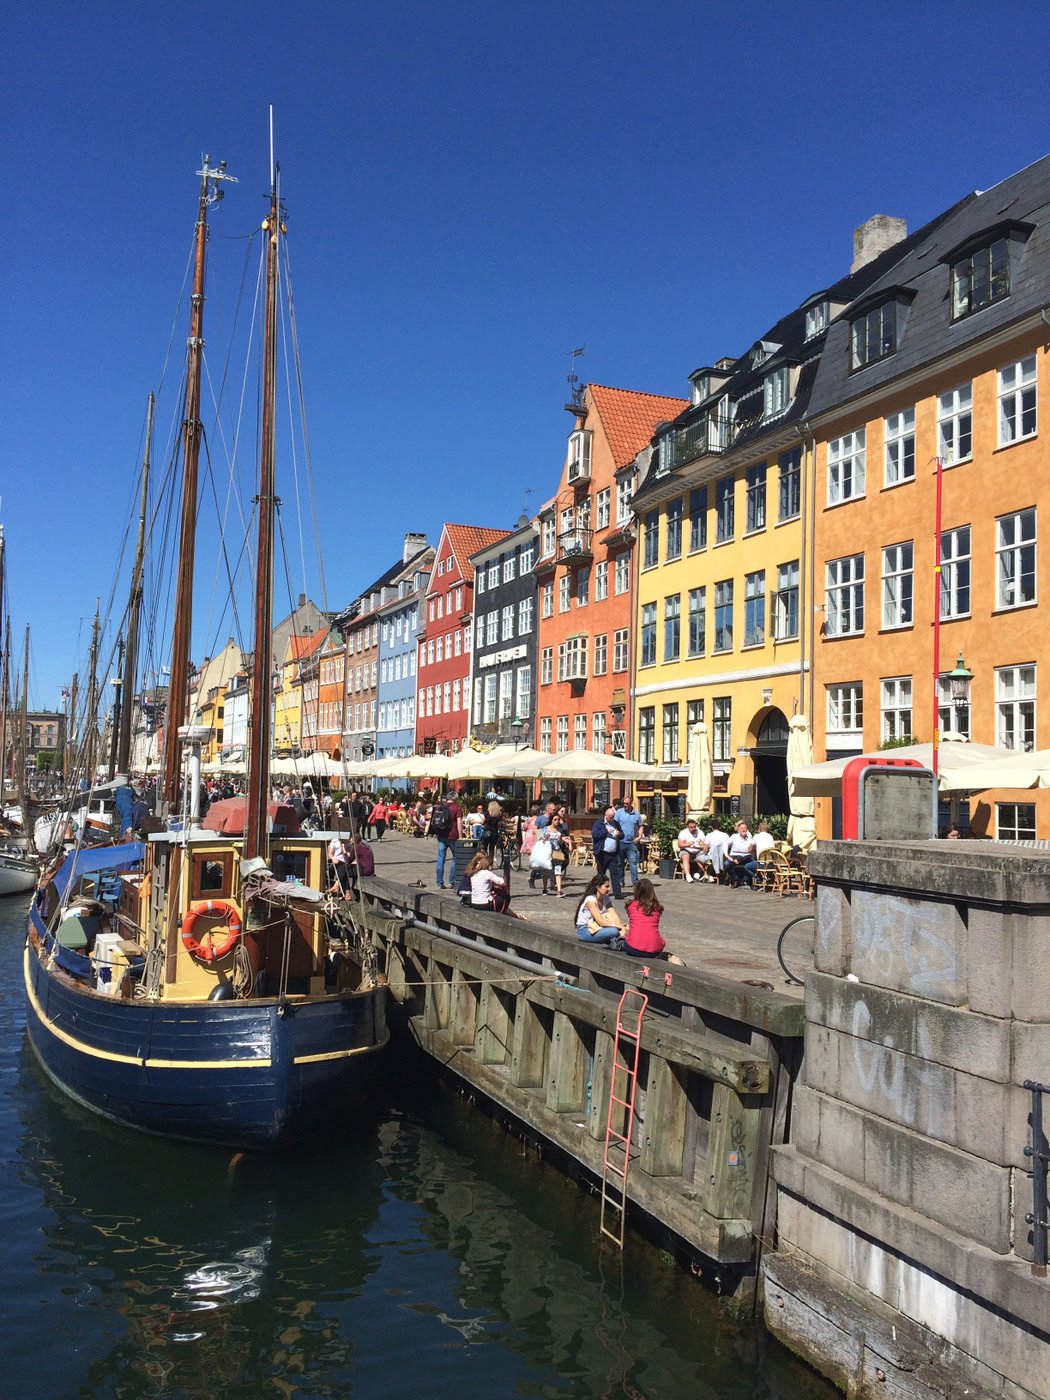 Barevné domy u vodního kanálu Nyhavn jsou dominantní památkou centra Kodaně